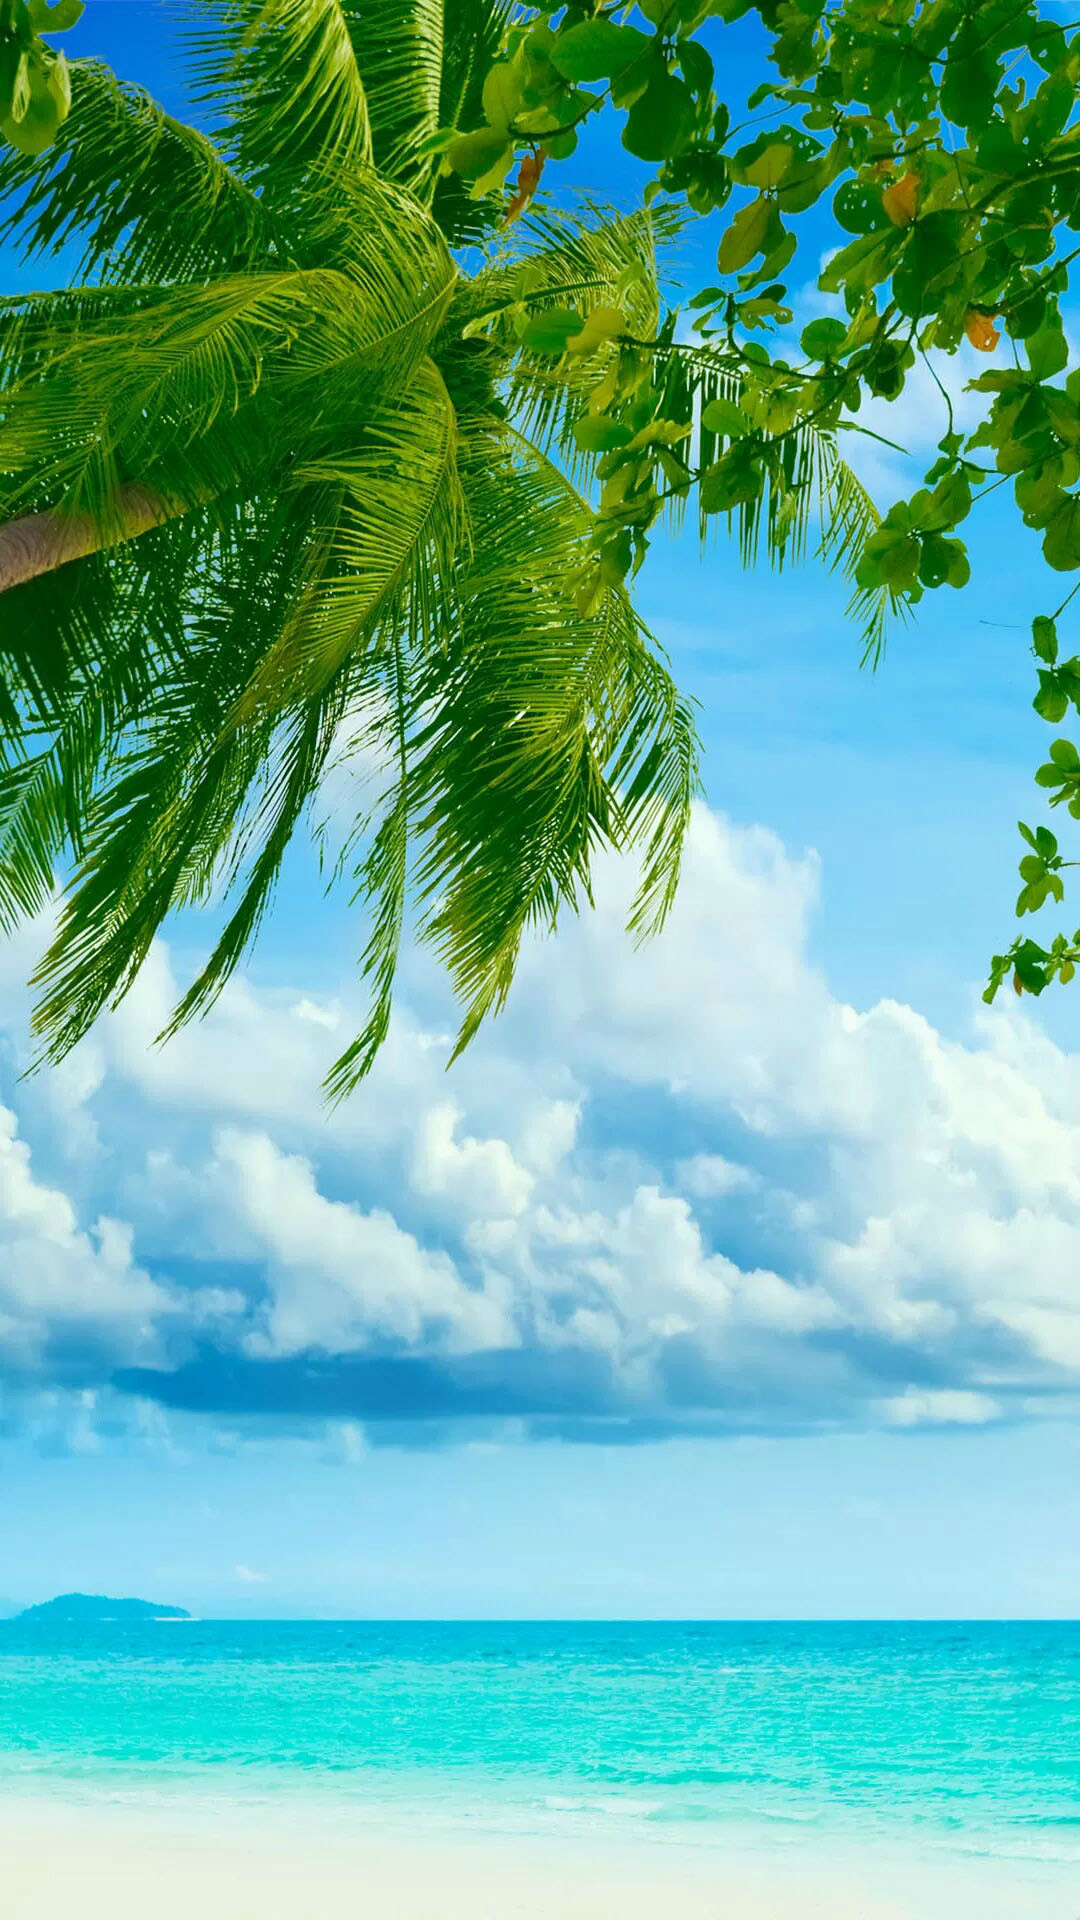 トロピカルなビーチとヤシの木 夏っぽいスマホ壁紙 Iphone Wallpapers